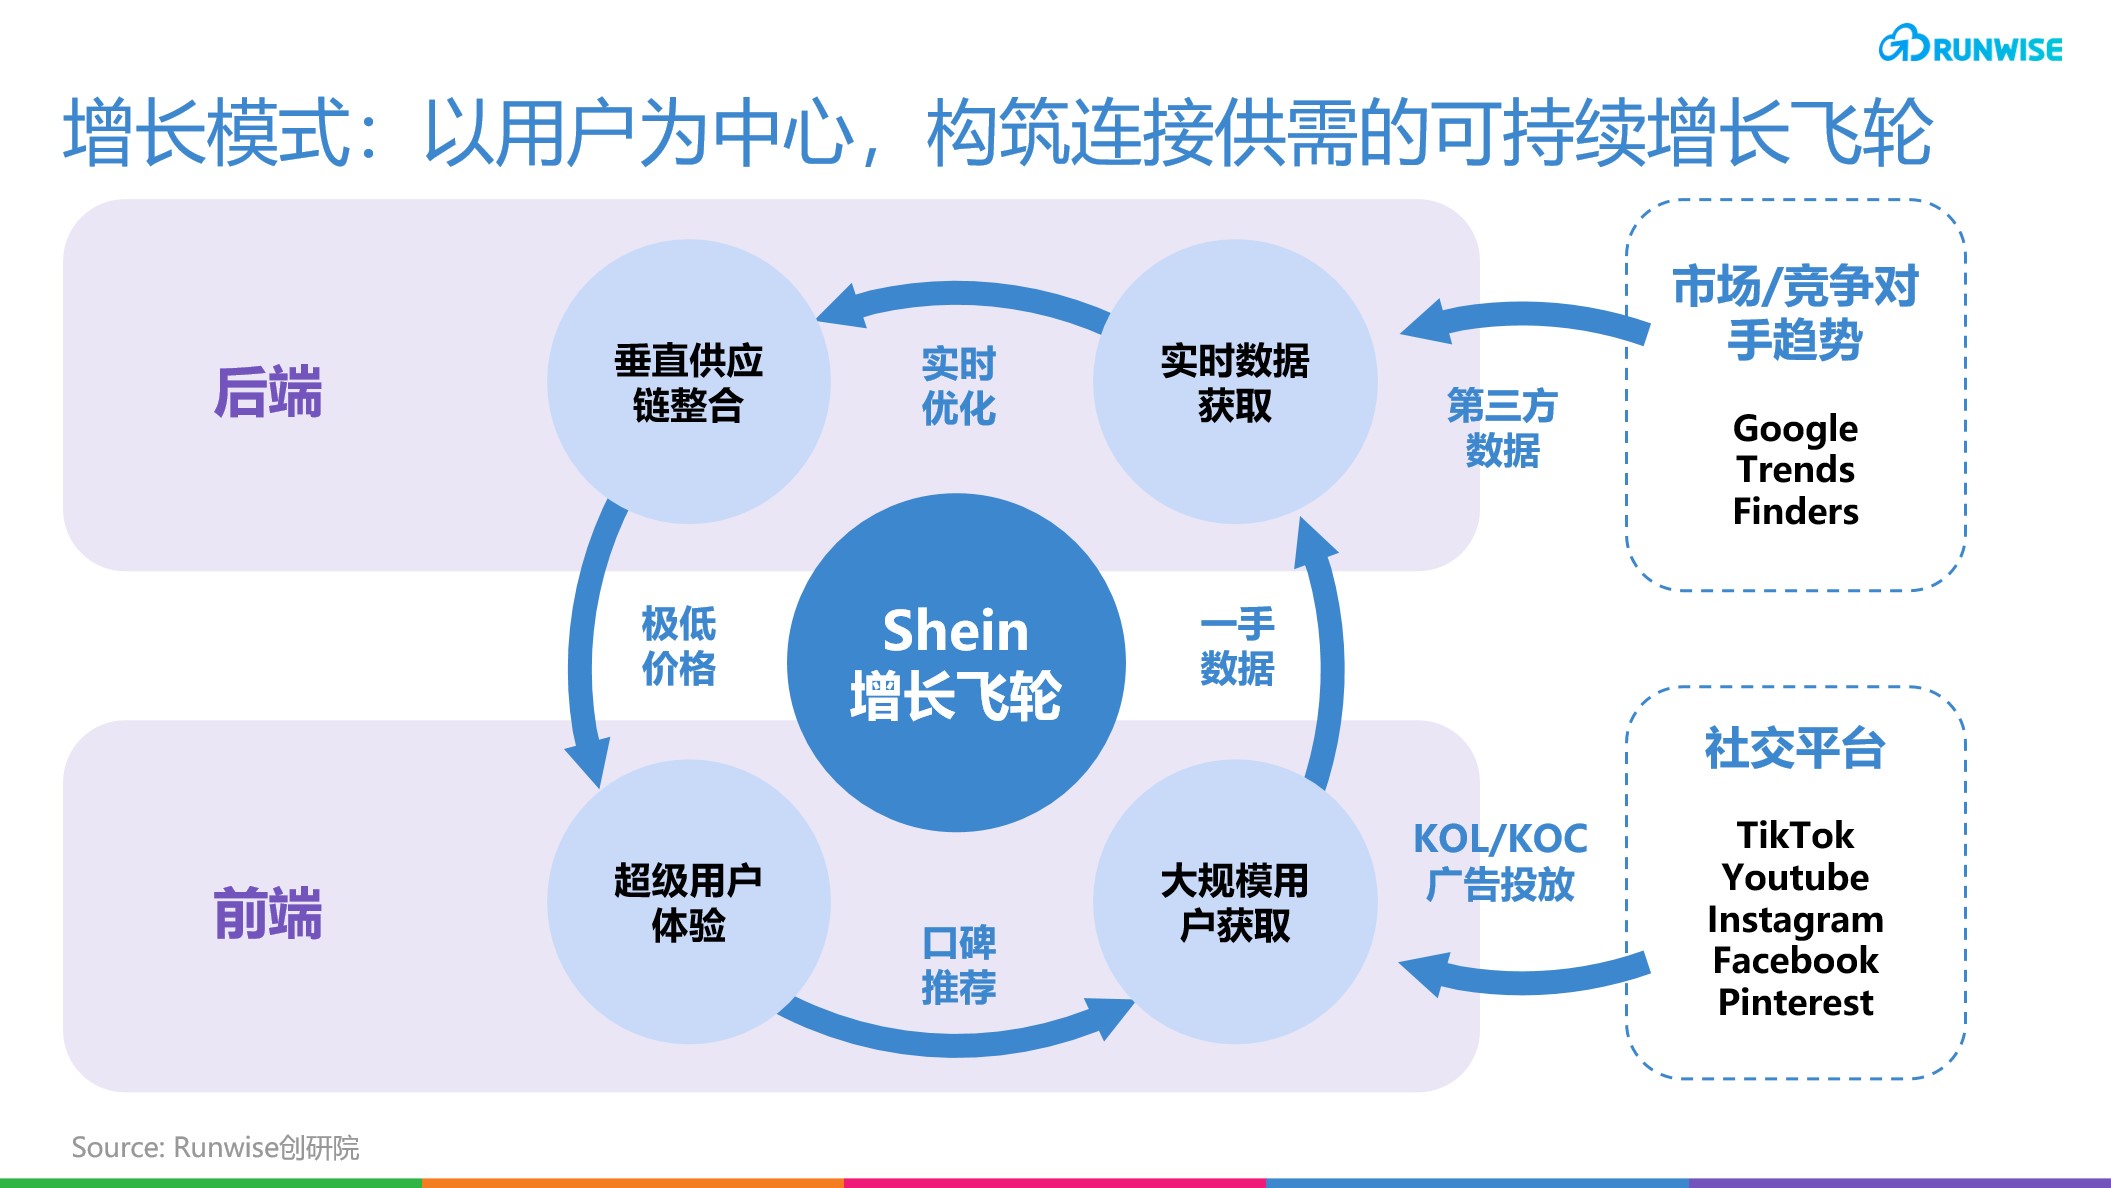 03 实时零售创新型企业 shein 构筑增长战略创新的四大关键